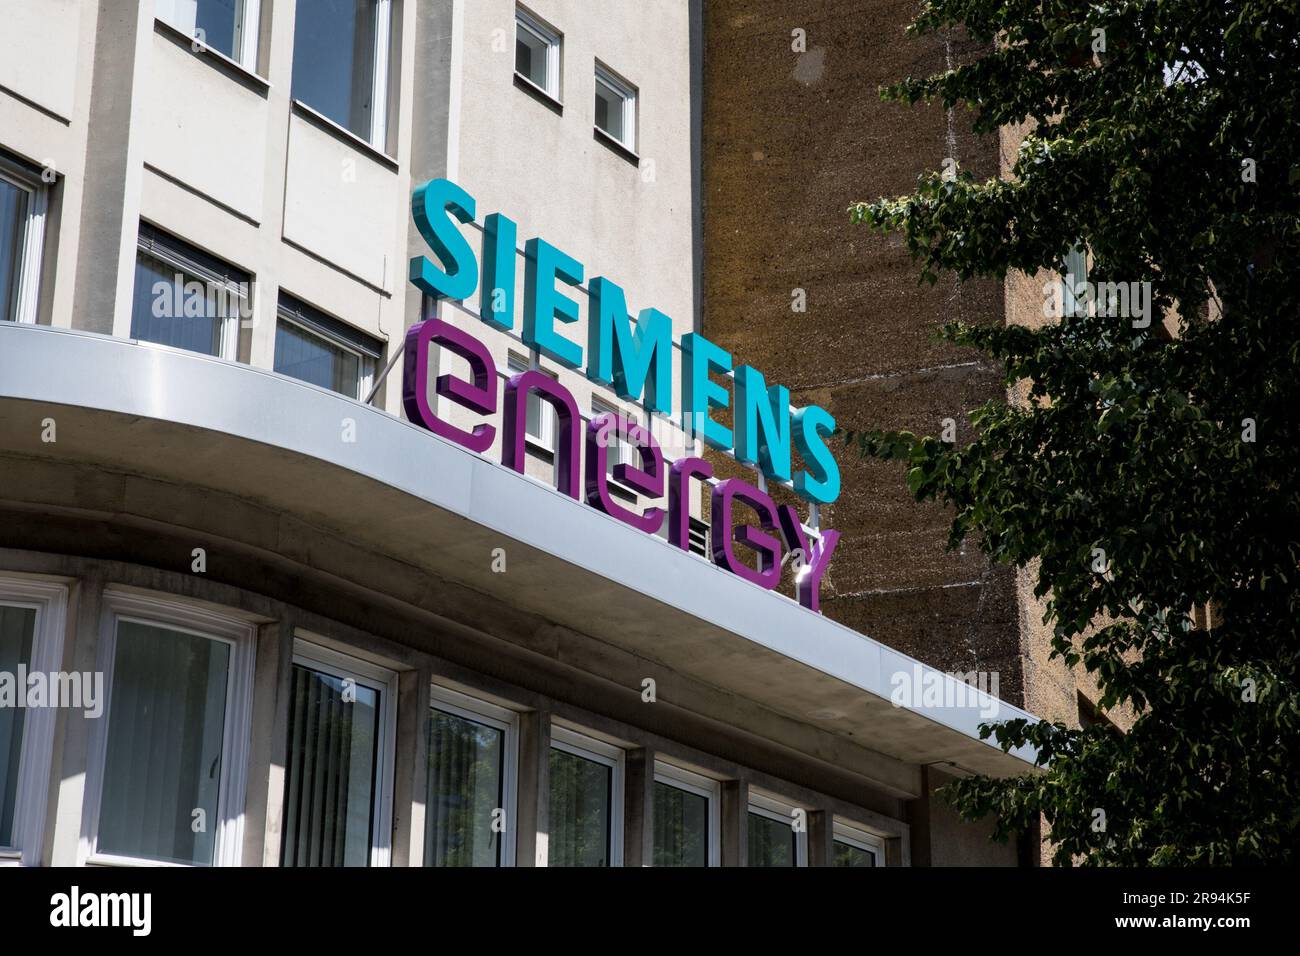 Berlin, Deutschland. 24. Juni 2023. Das Siemens Energy-Gebäude in Berlin am 24. Juni 2023. Die Aktien von Siemens Energy sind aufgrund unerwarteter Qualitätsprobleme bei Siemens Gamesa um 37,3 % gesunken, was dazu geführt hat, dass das Unternehmen seine jährliche Gewinnprognose zurückzieht. Die Investoren sind besorgt über die Auswirkungen langwieriger Straffungszyklen auf die globale wirtschaftliche Erholung. Das Wachstum der Unternehmen in der Eurozone stagnierte im Juni, und die deutsche Geschäftstätigkeit verlangsamte sich in diesem Monat deutlich. (Kreditbild: © Michael Kuenne/PRESSCOV via ZUMA Press Wire) NUR REDAKTIONELLE VERWENDUNG! Nicht für den kommerziellen GEBRAUCH! Stockfoto